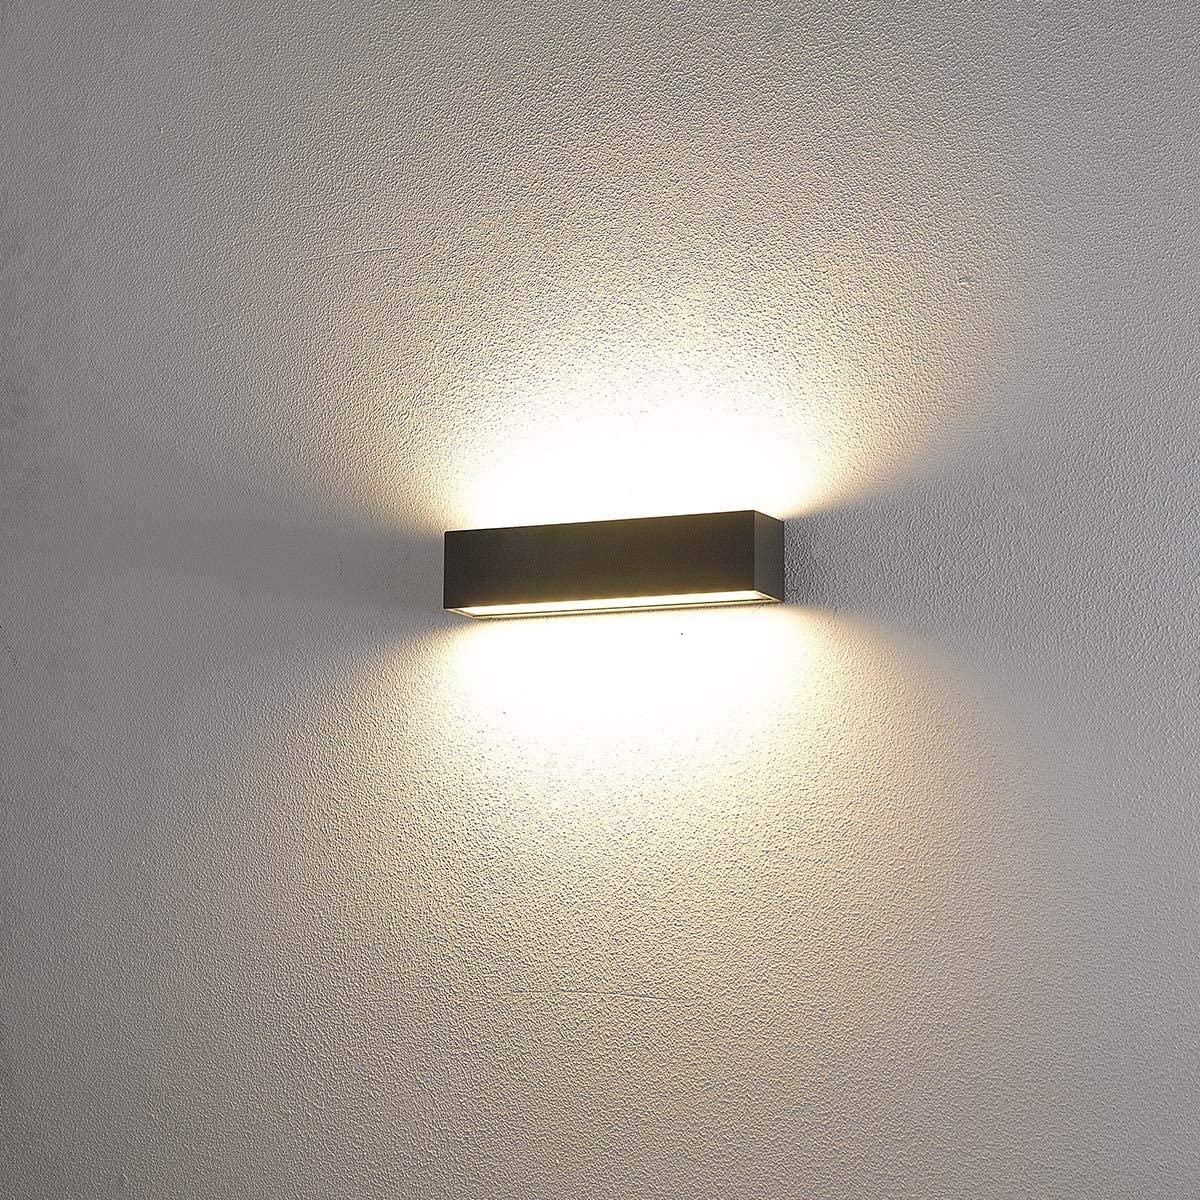 الأضاءة داخلية و خارجية - إضاءة على الجدار - لون الإضاءة أبيض - موفر للطاقة H1381